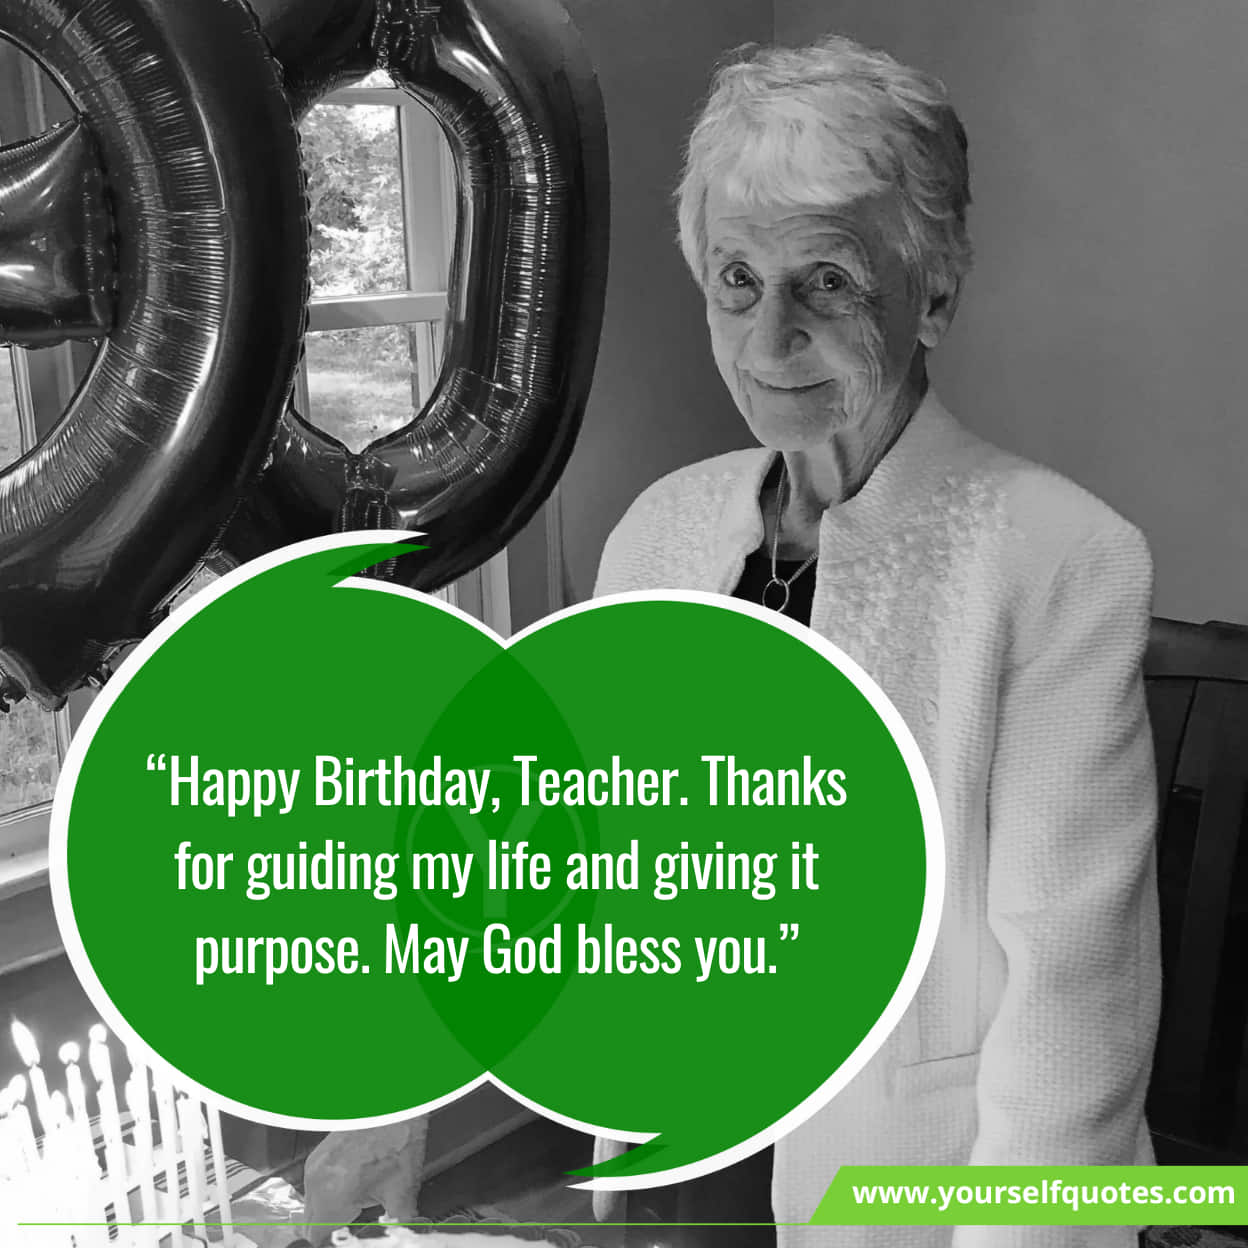 Best Birthday Wishes For Teacher